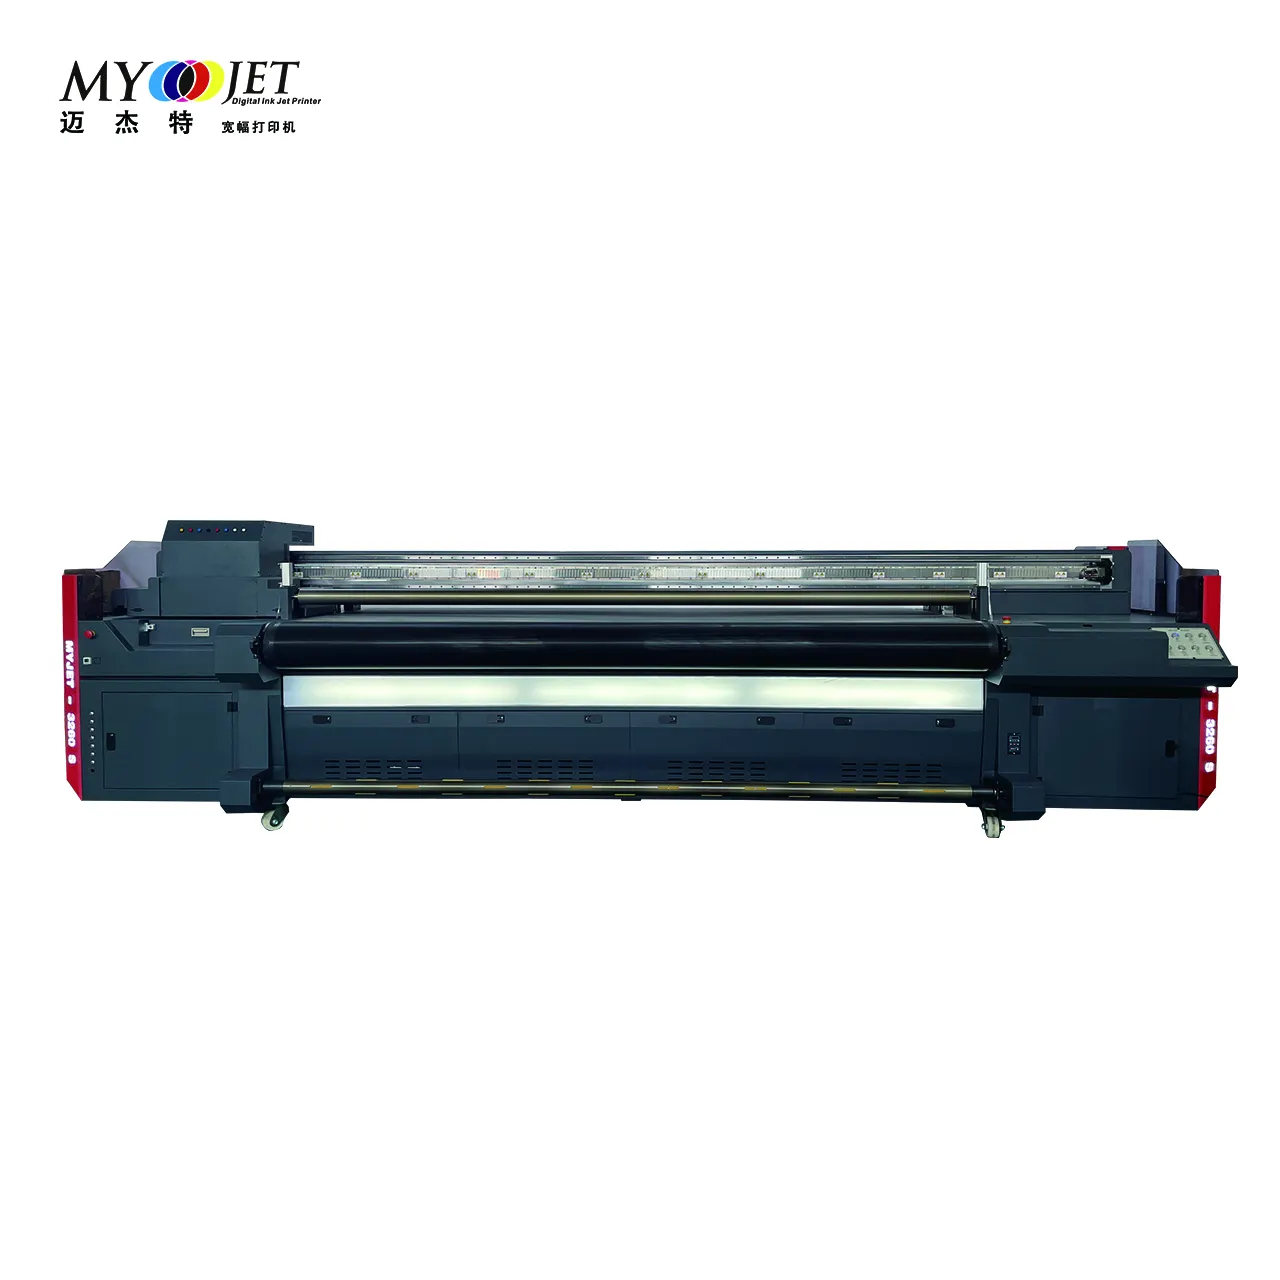 MYJET Профессиональный 3,2 m uv Гибридный принтер 3260 с Ricoh Gen5/Gen6 печатающая головка Ультрафиолетовый для того чтобы свернуть планшетный принтер Uv струйный принтер